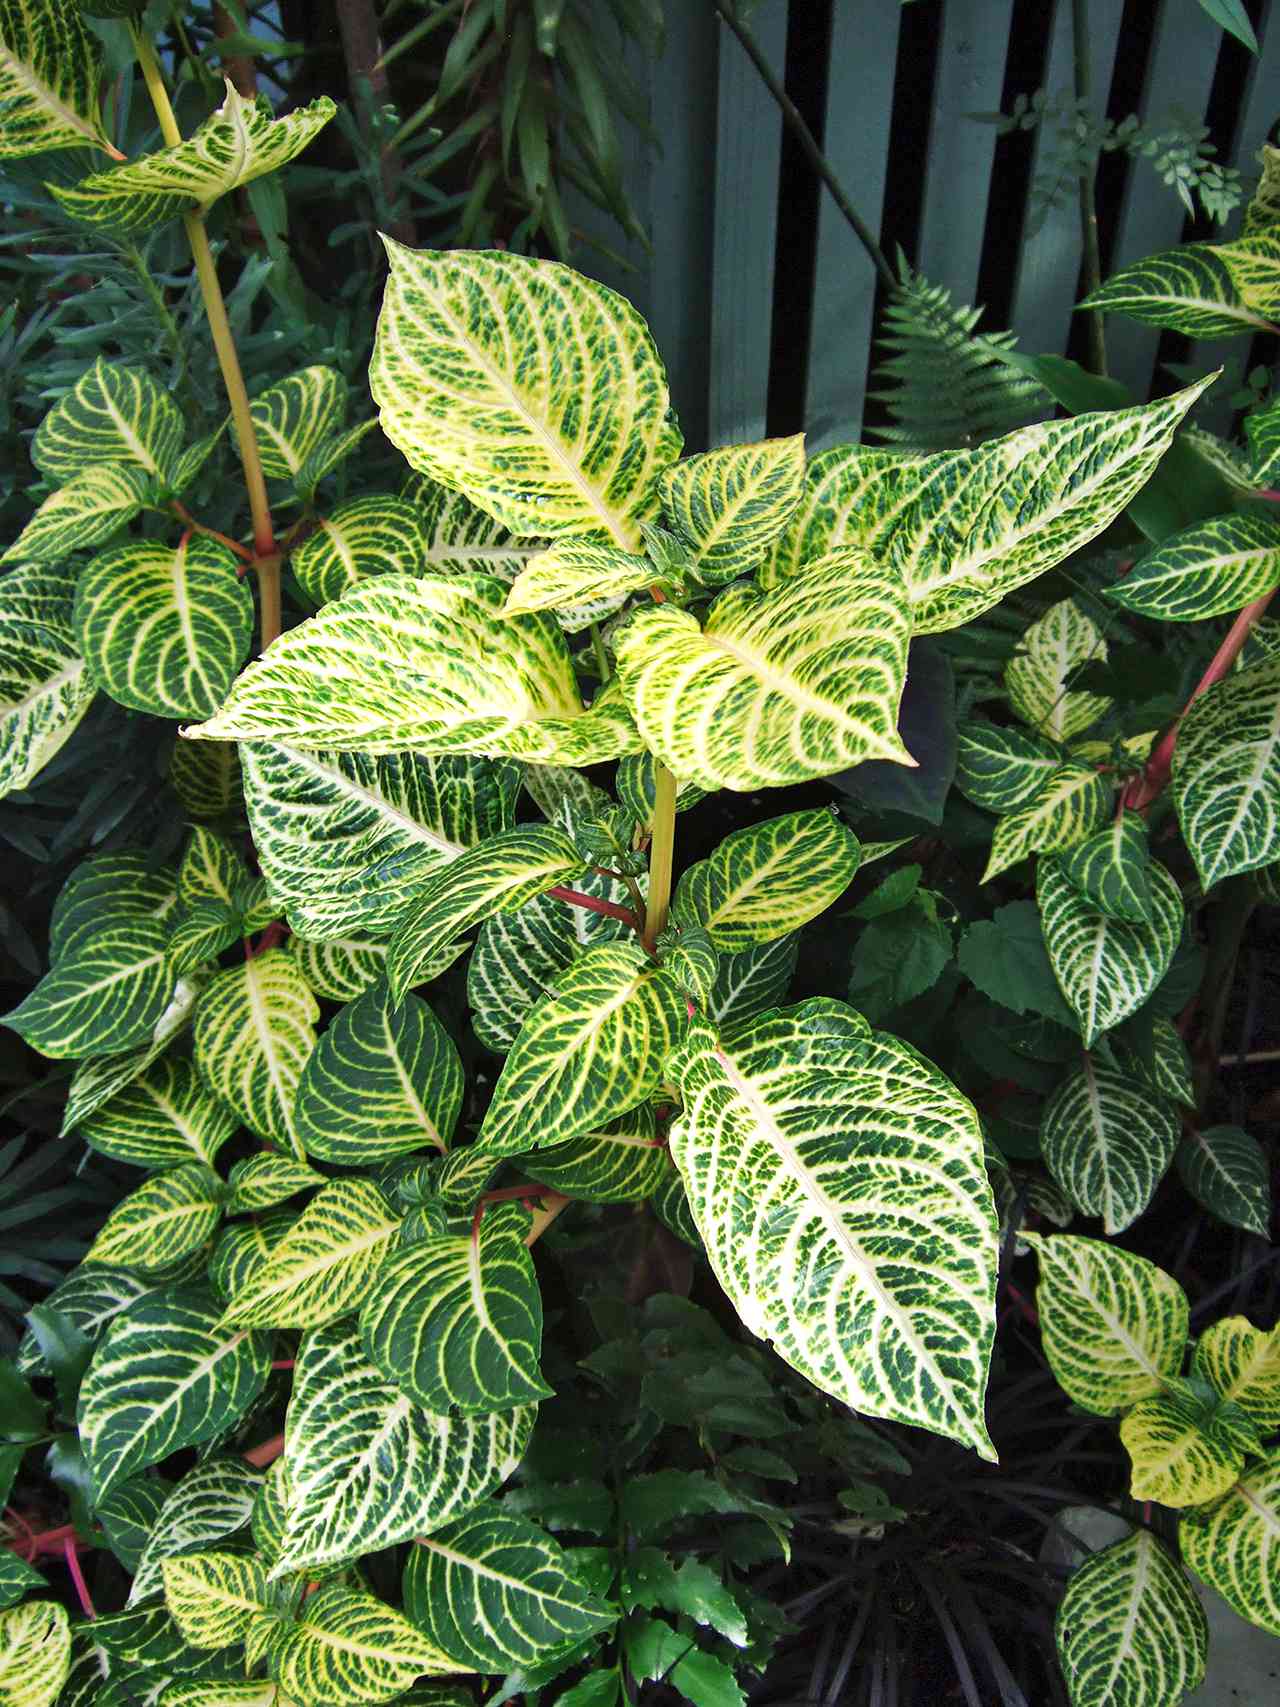 green Iresine leaves